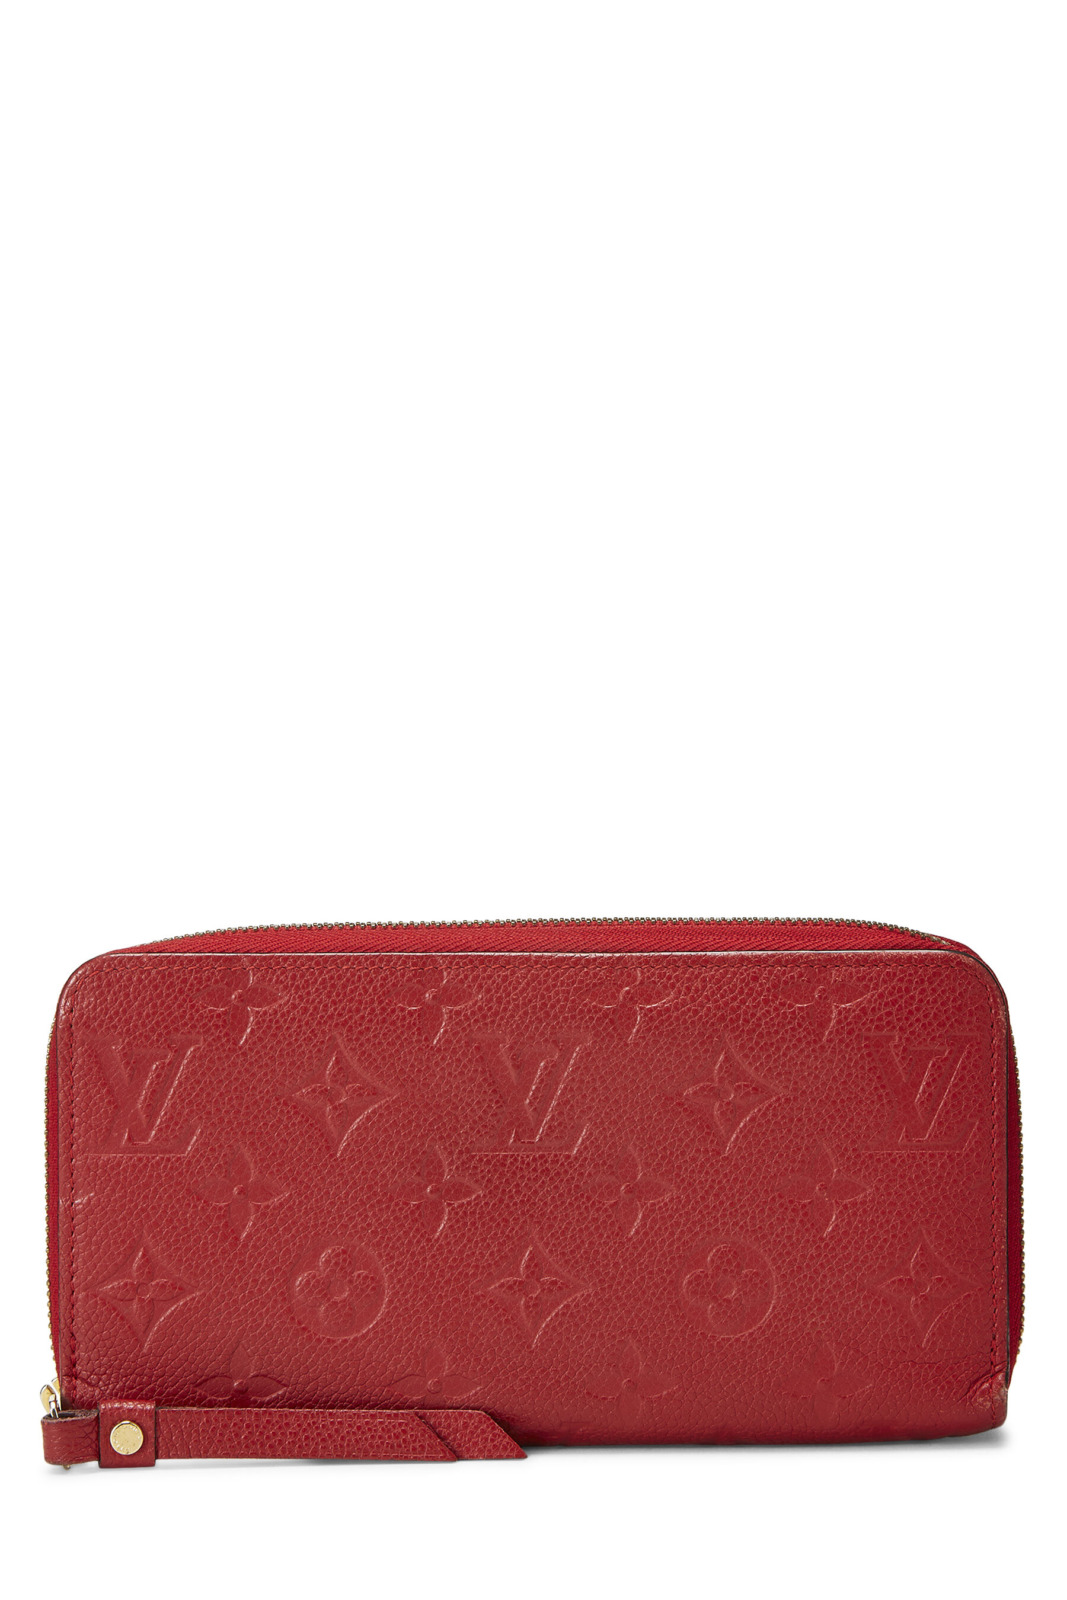 Red Wallet WGACA Louis Vuitton Women GOOFASH